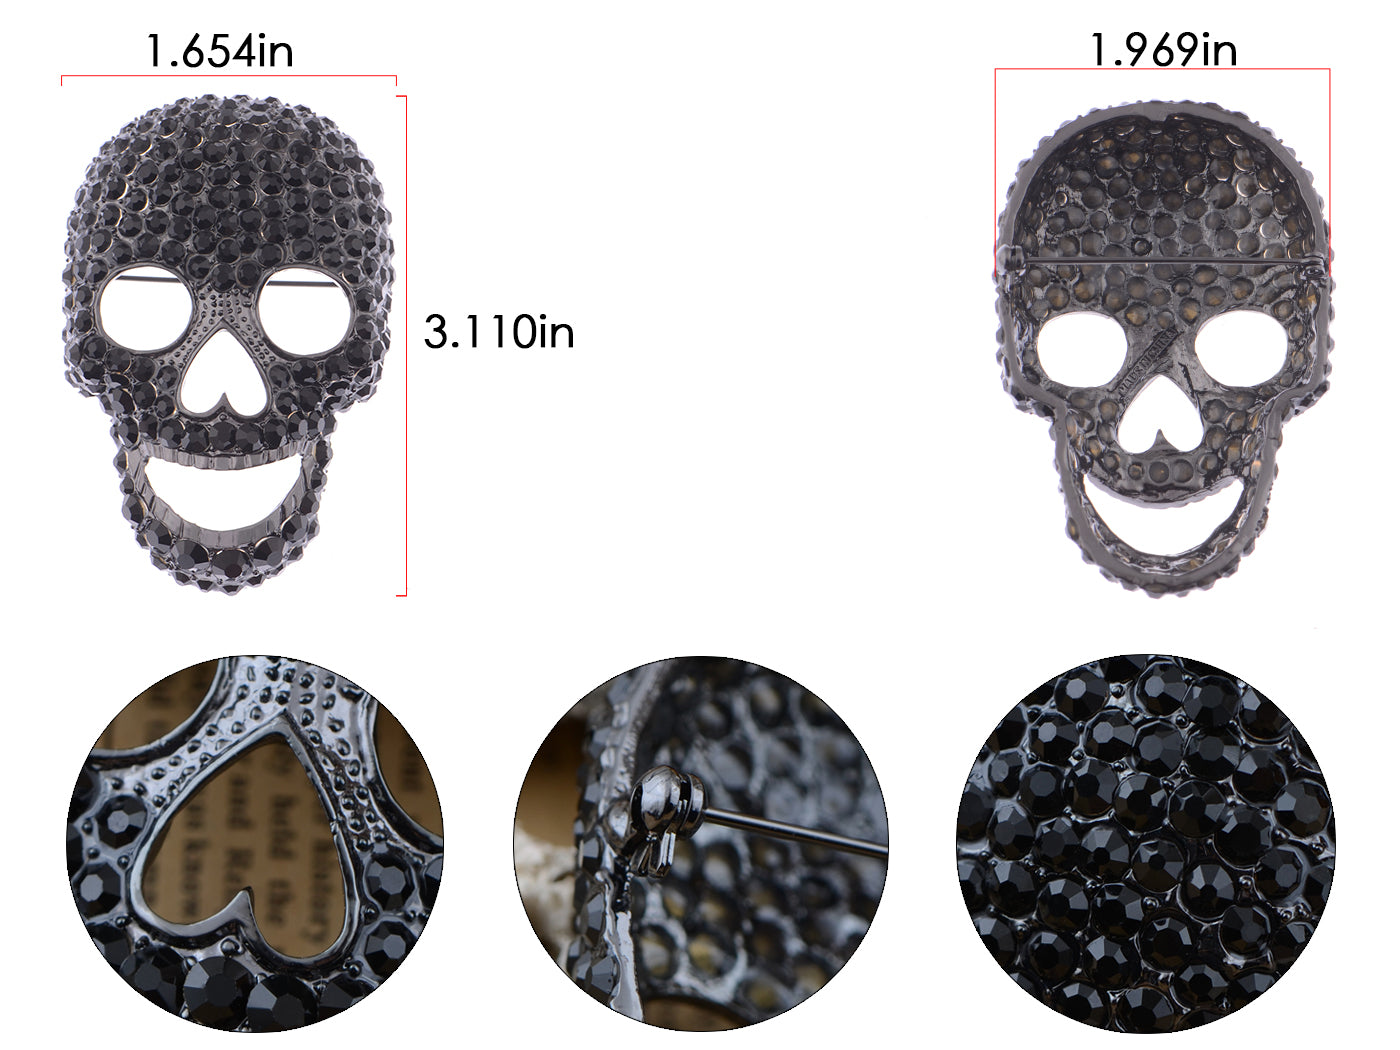 Gun Black Colored Big Skull Head Face Brooch Pin